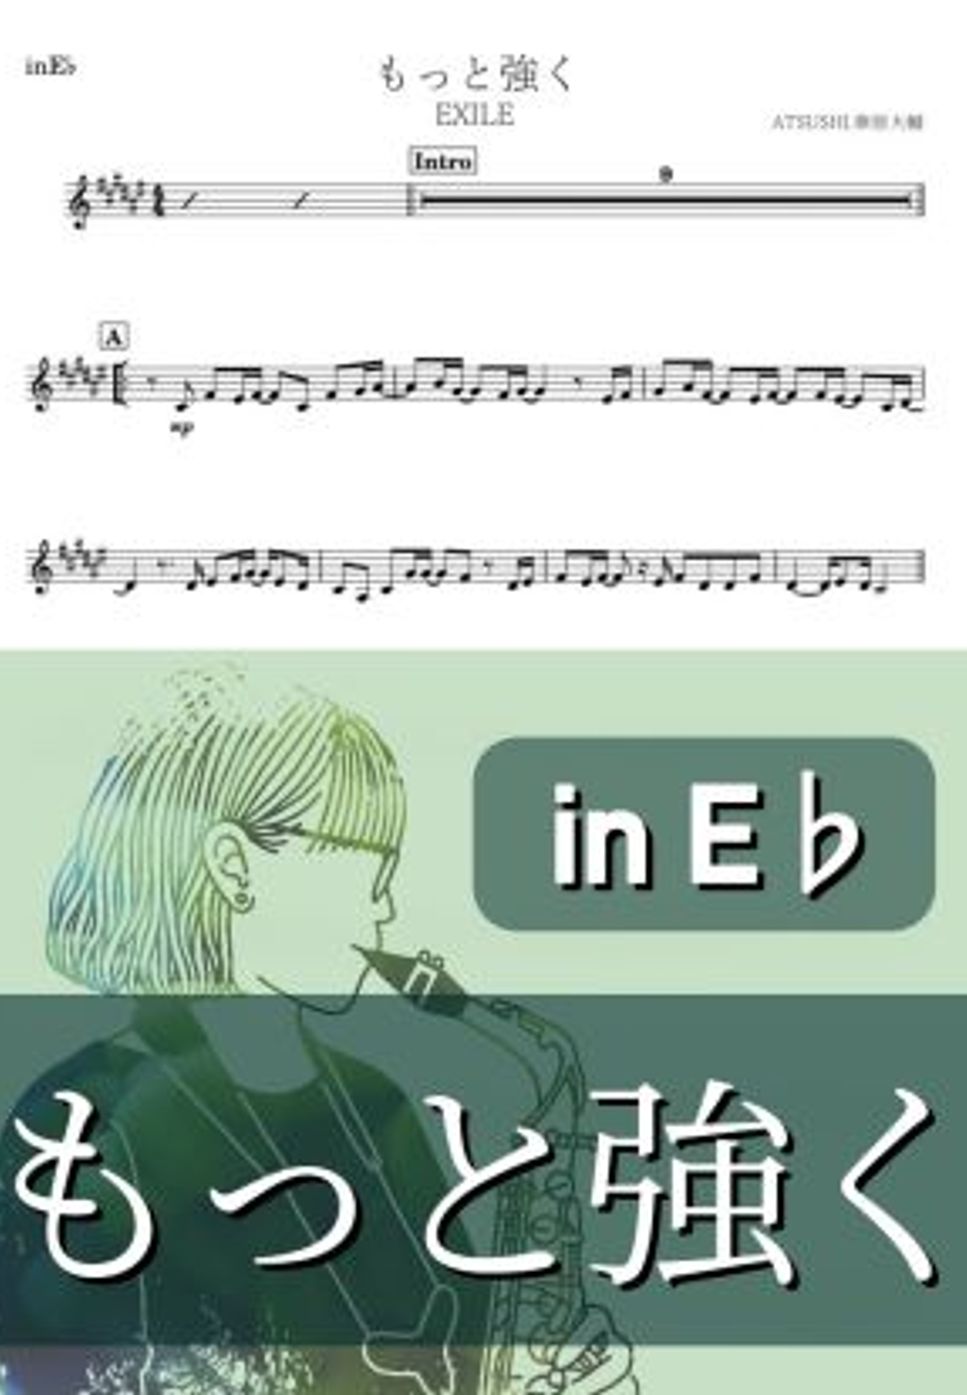 EXILE - もっと強く (E♭) by kanamusic